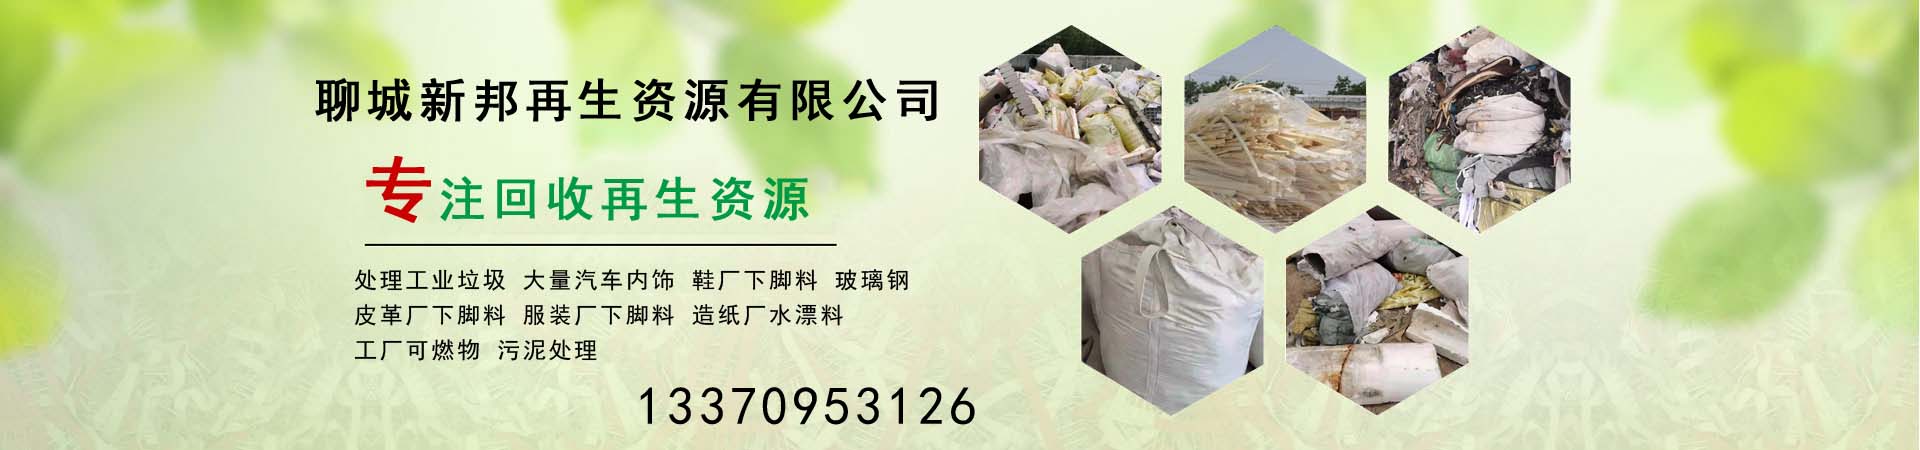 造纸厂水漂料处理、桂林本地造纸厂水漂料处理、桂林、桂林造纸厂水漂料处理